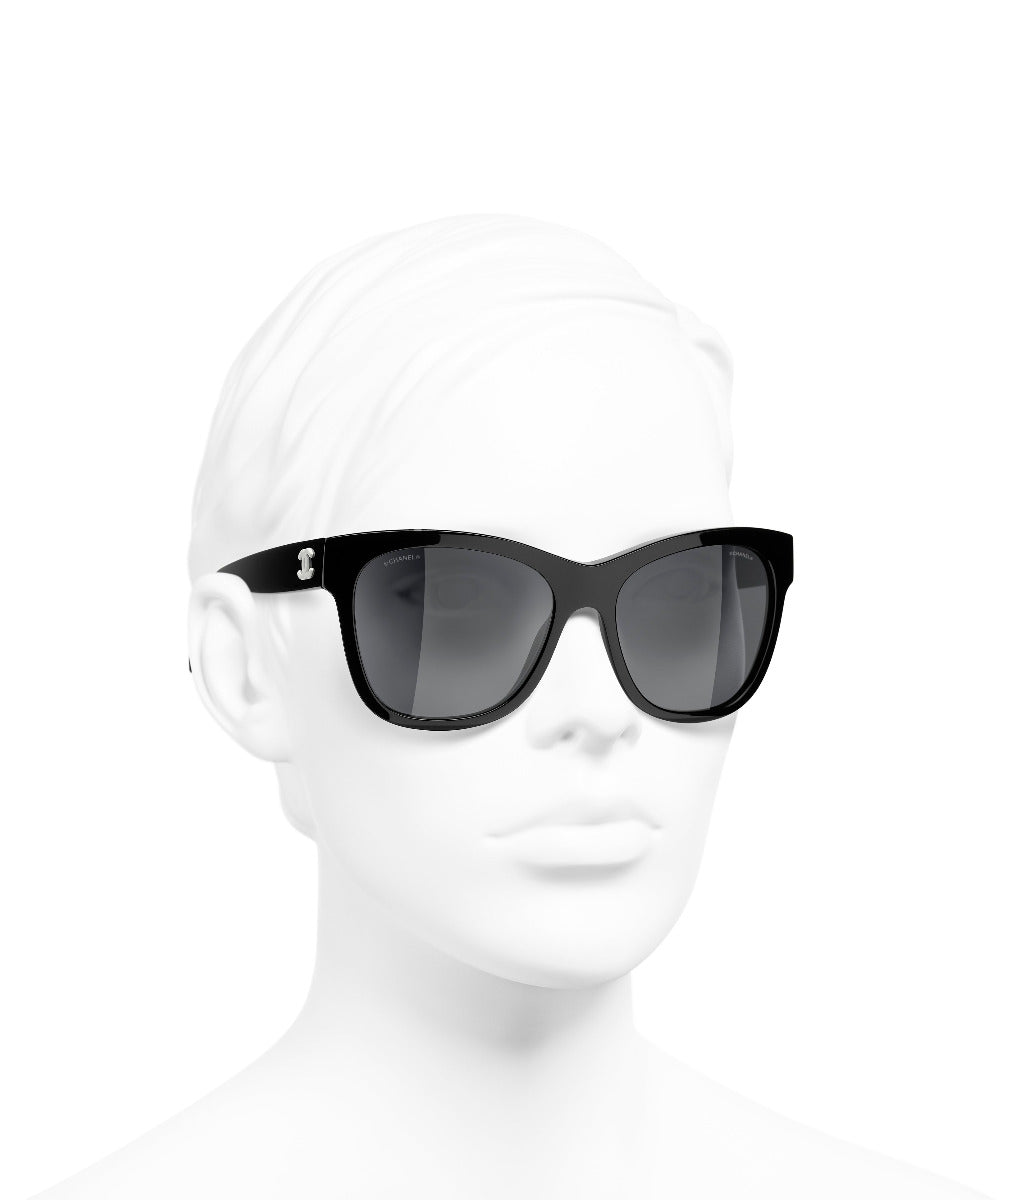 Chanel 5380 1706/S5 Sunglasses